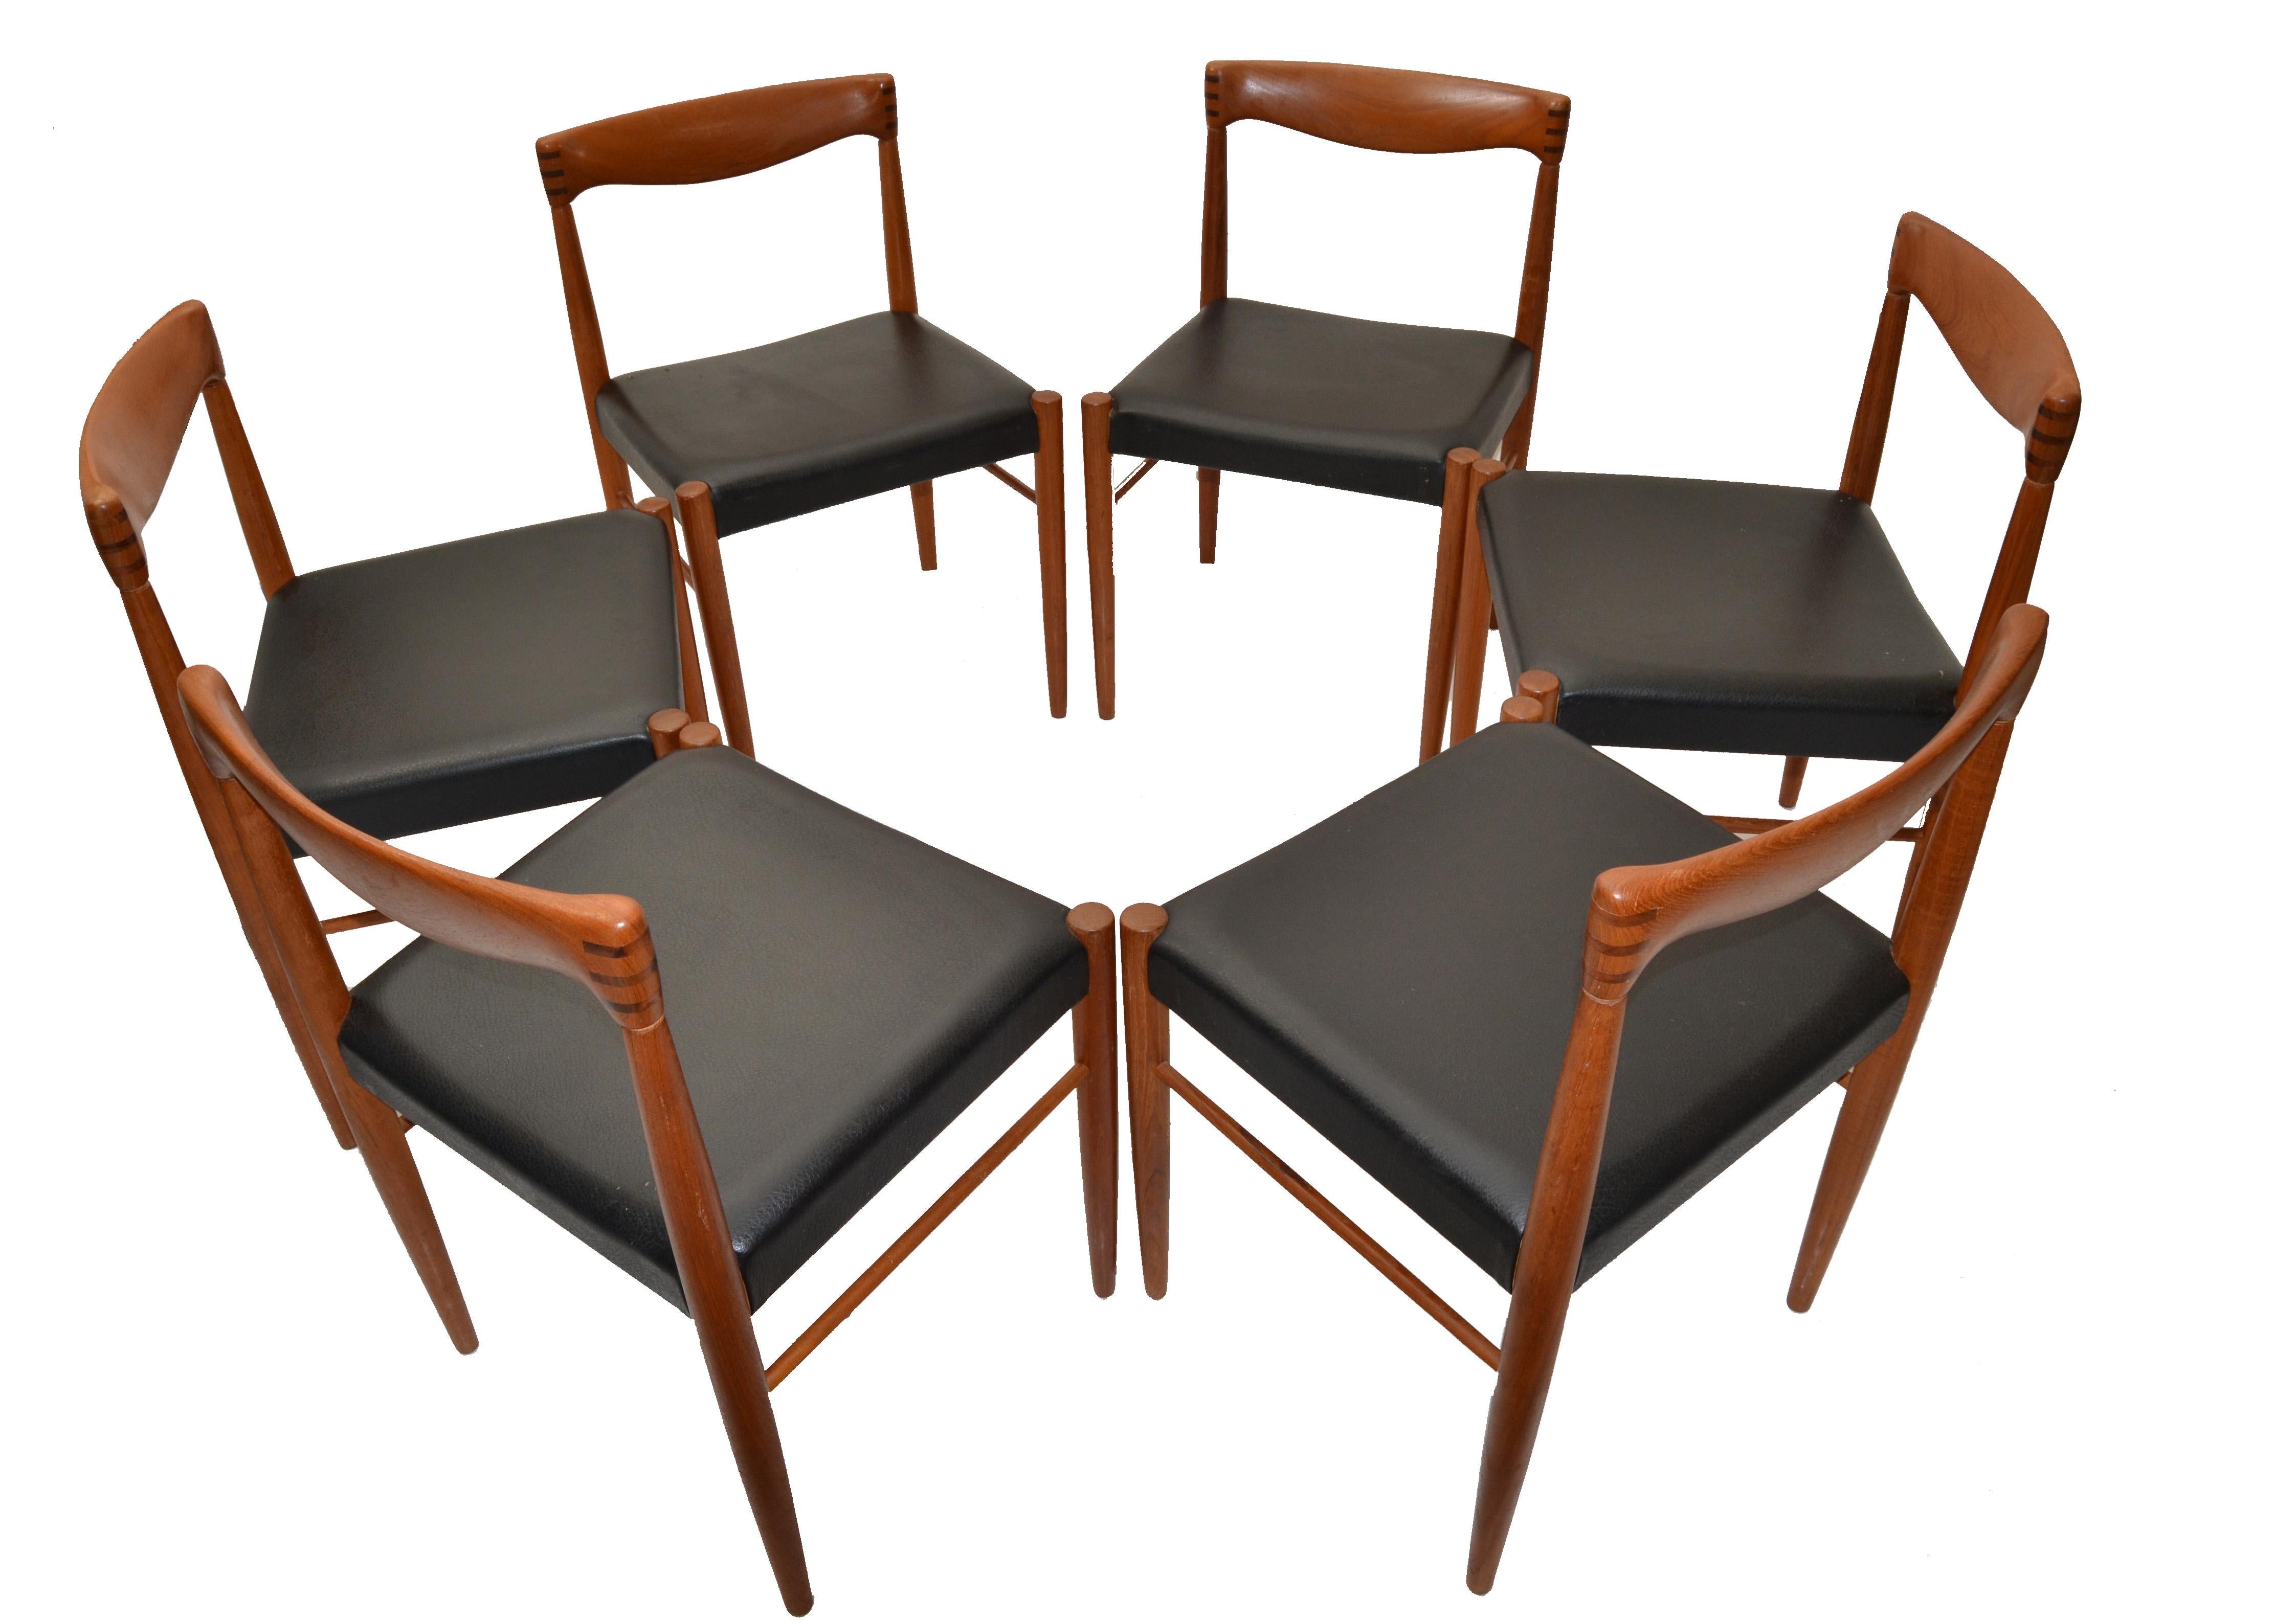 The Modern Scandinavian Set of six Henry Walter Klein dining chairs in teak with rosewood inlays and black faux leather Seats.
Fabriqué dans les années 1960 chez Bramin Møbler au Danemark. Les bois de teck et de palissandre massifs, habilement